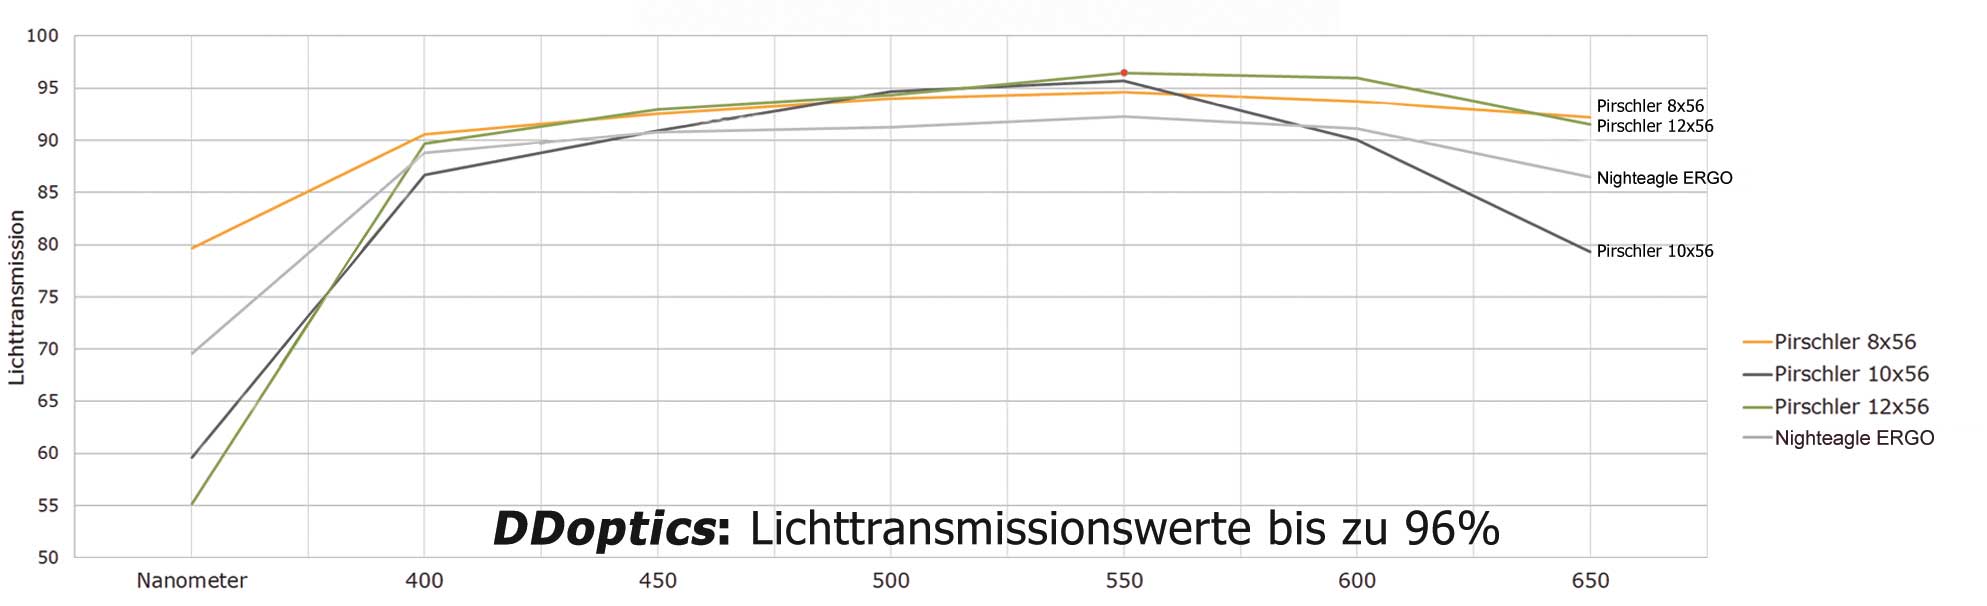 media/image/DDoptics-LP-Pirschler-Fernglas-Lichttransmissionskurve.jpg